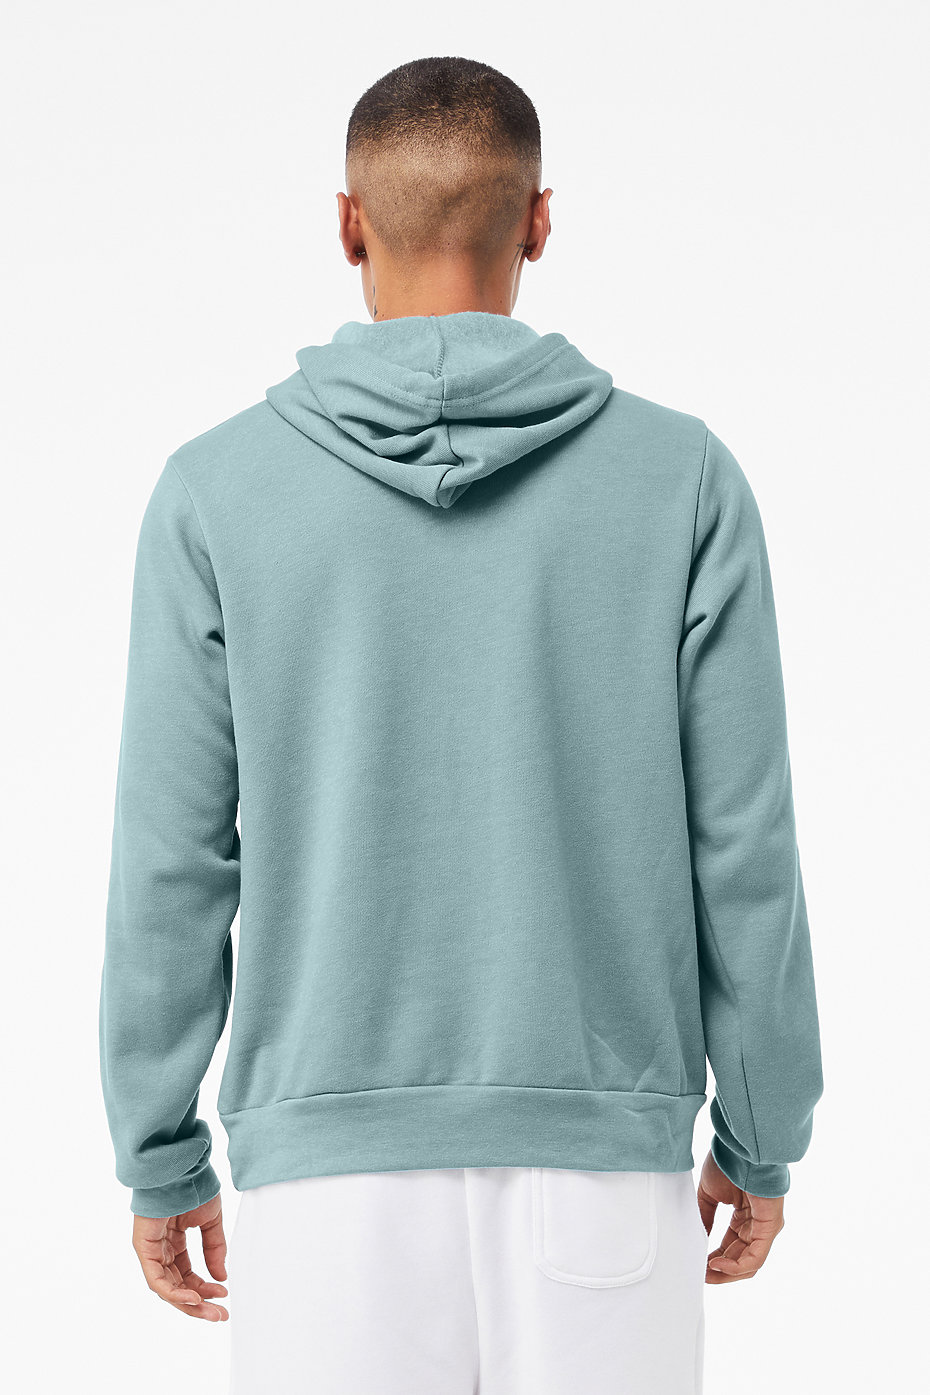 Hoodies For Men | Custom Sweatshirts | Pullover Hoodies | Mens ...